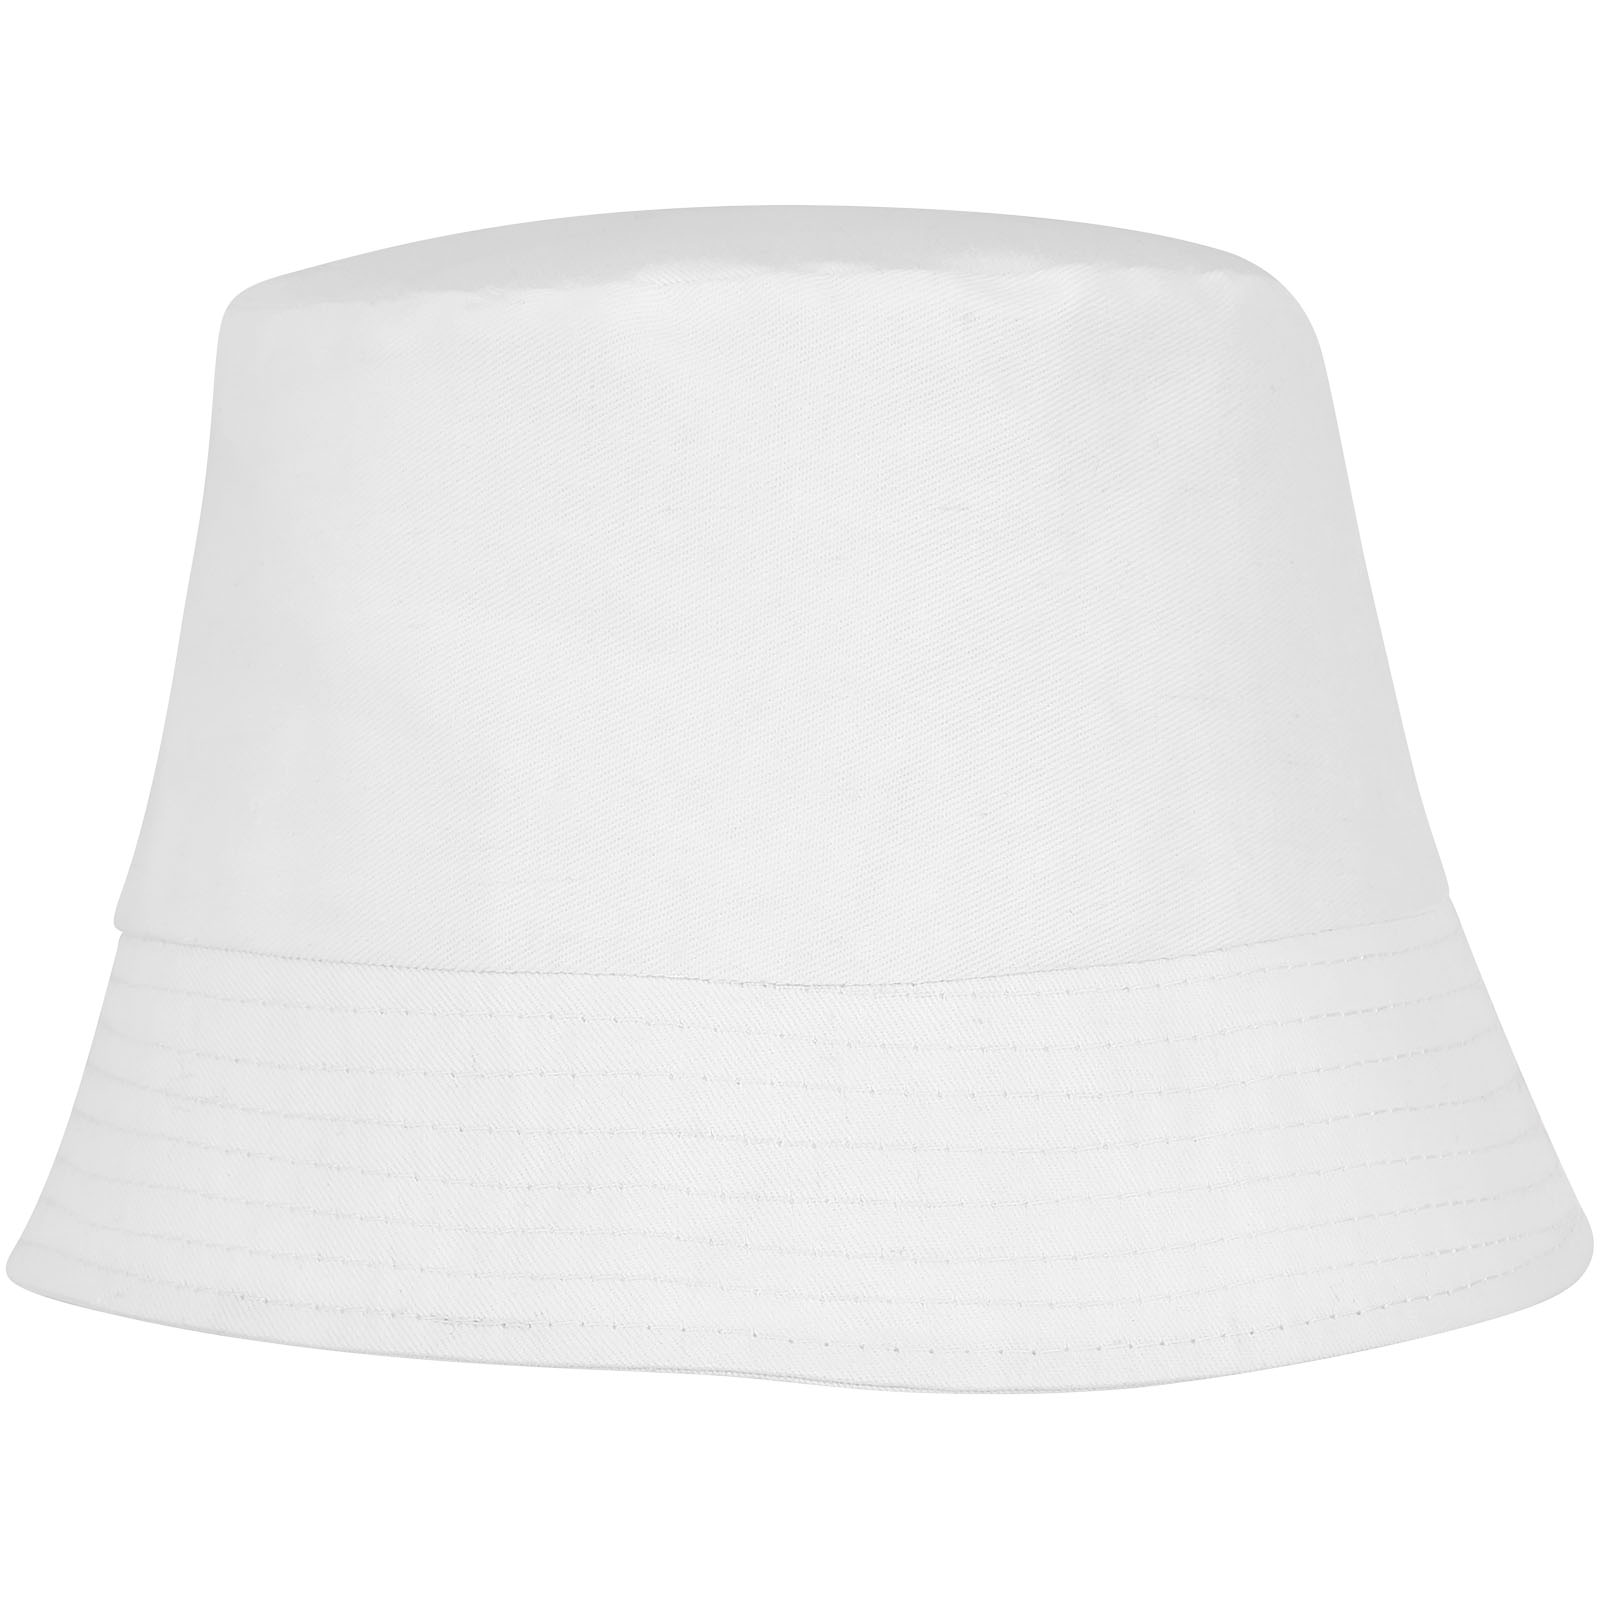 Advertising Caps & Hats - Solaris sun hat